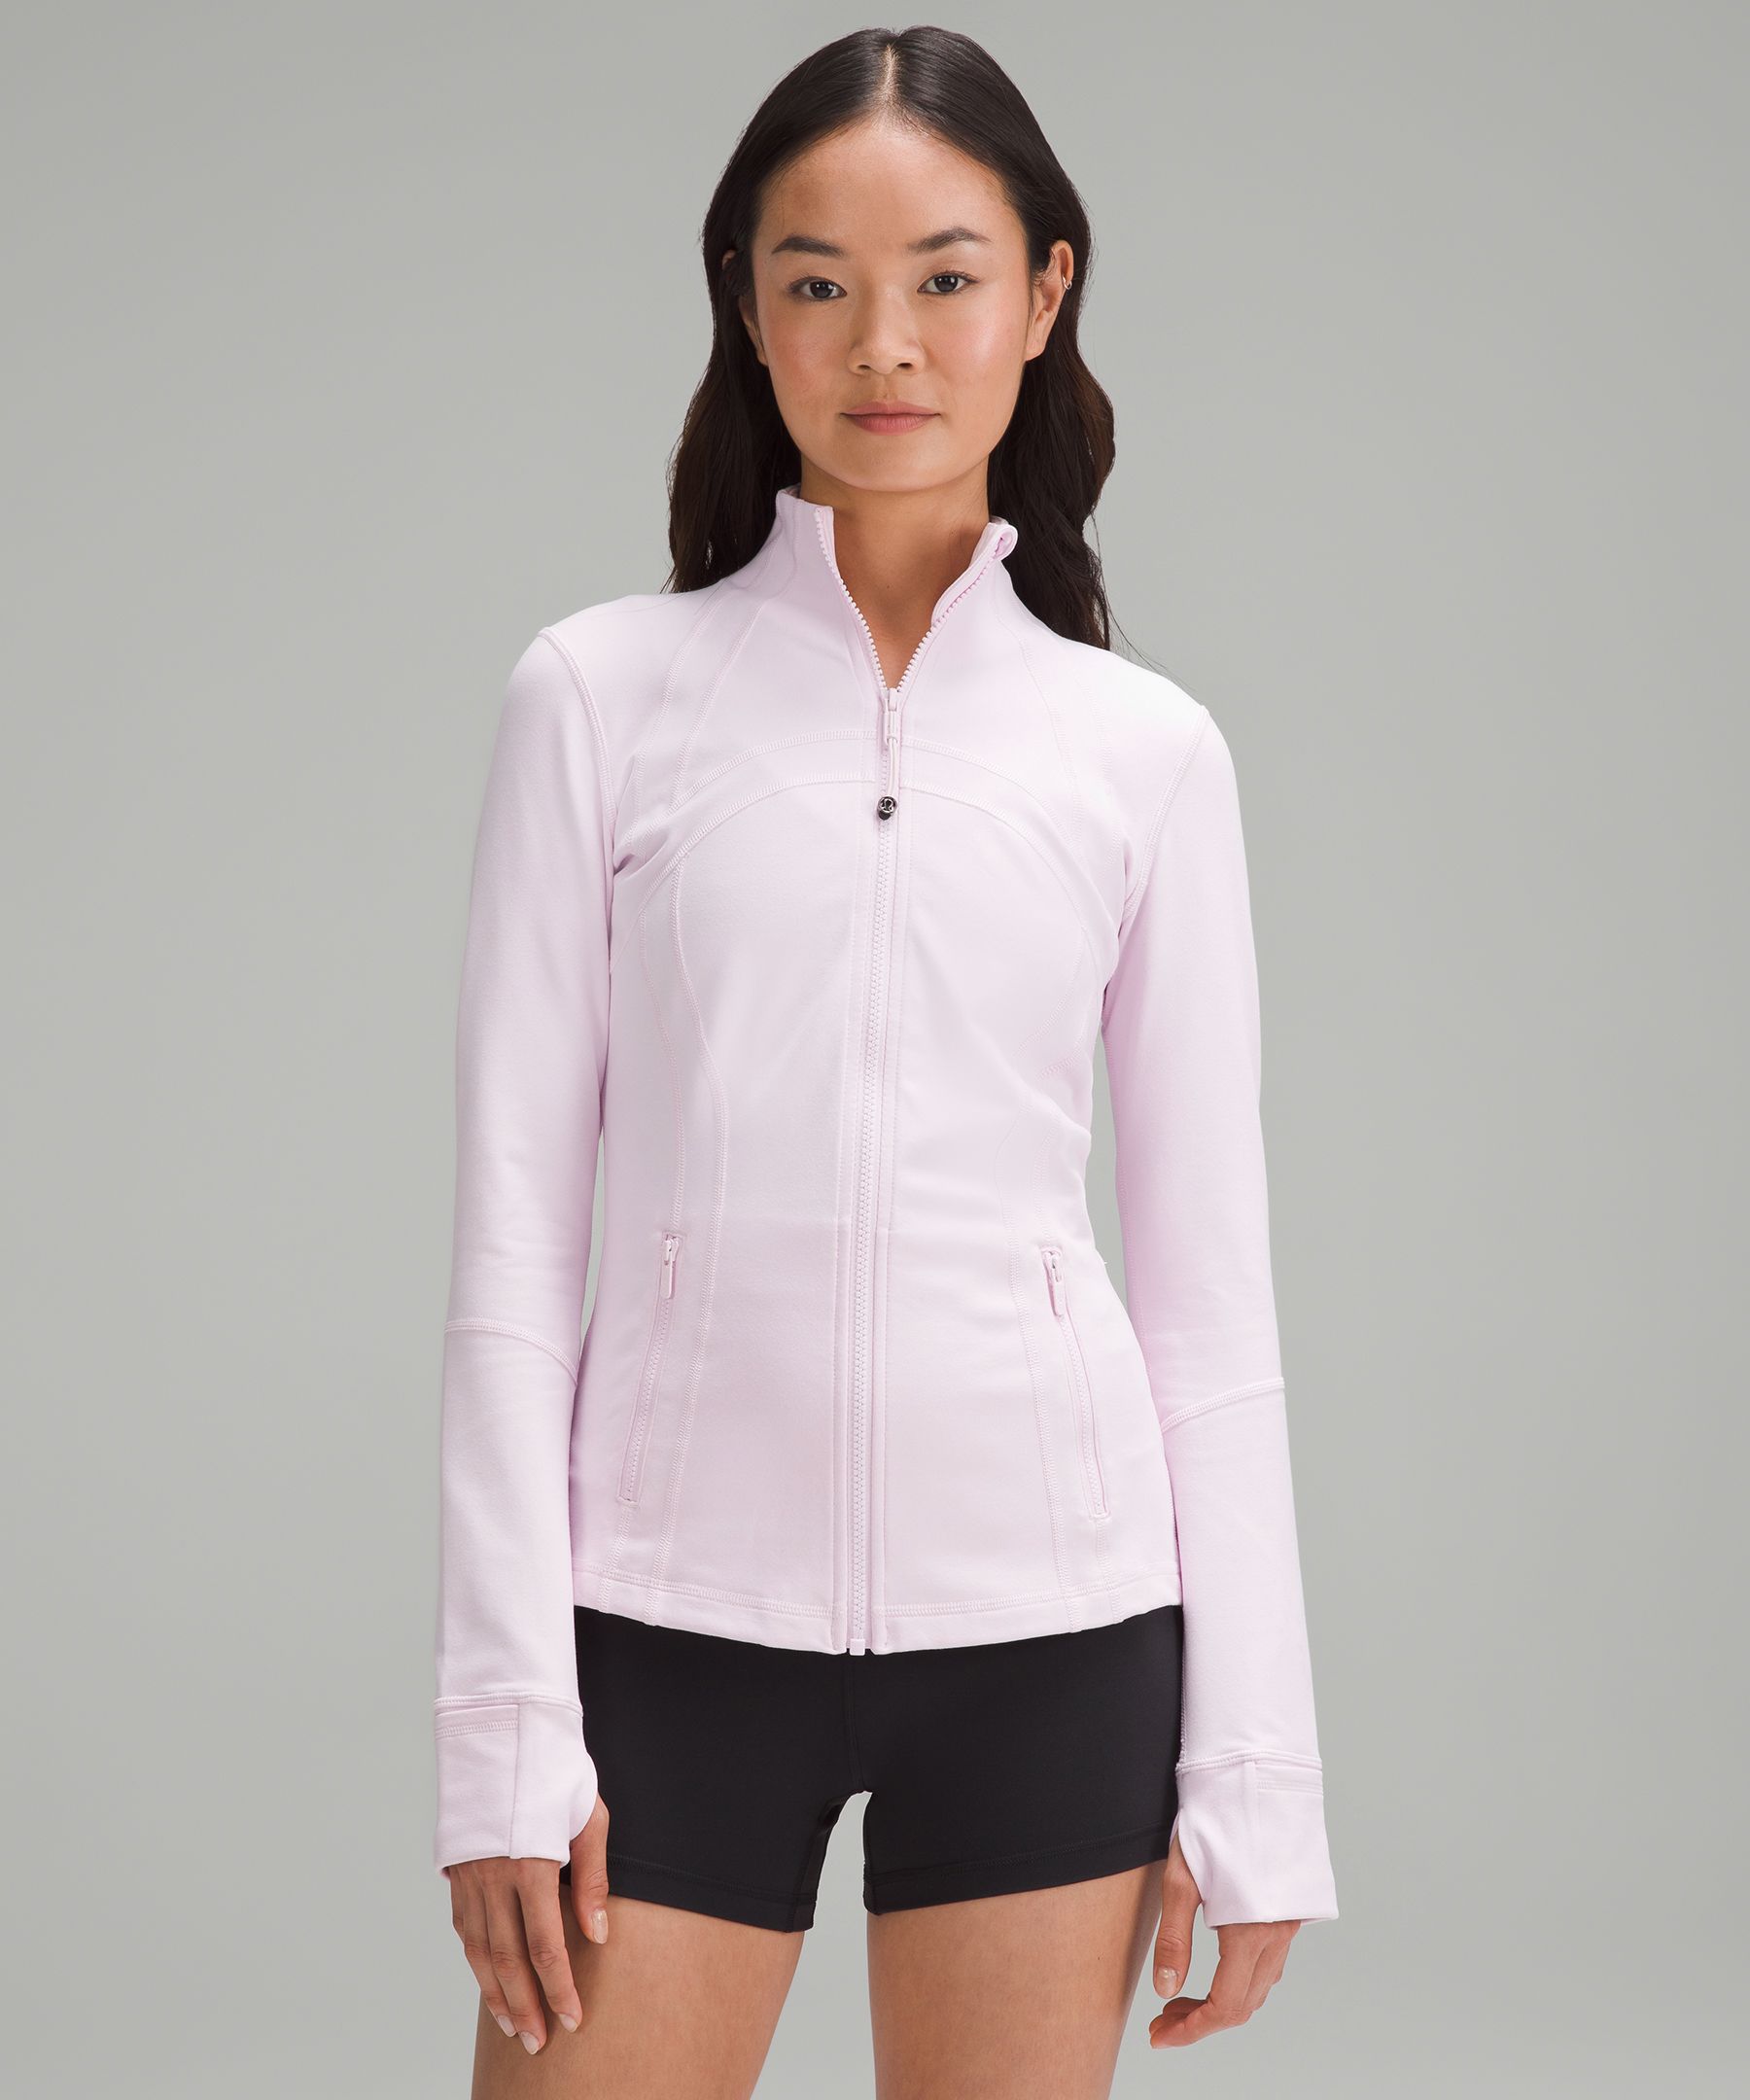 lululemon athletica, Jackets & Coats, Lululemon Define Jacket Luon In  White Size 6 Brand New Nwt